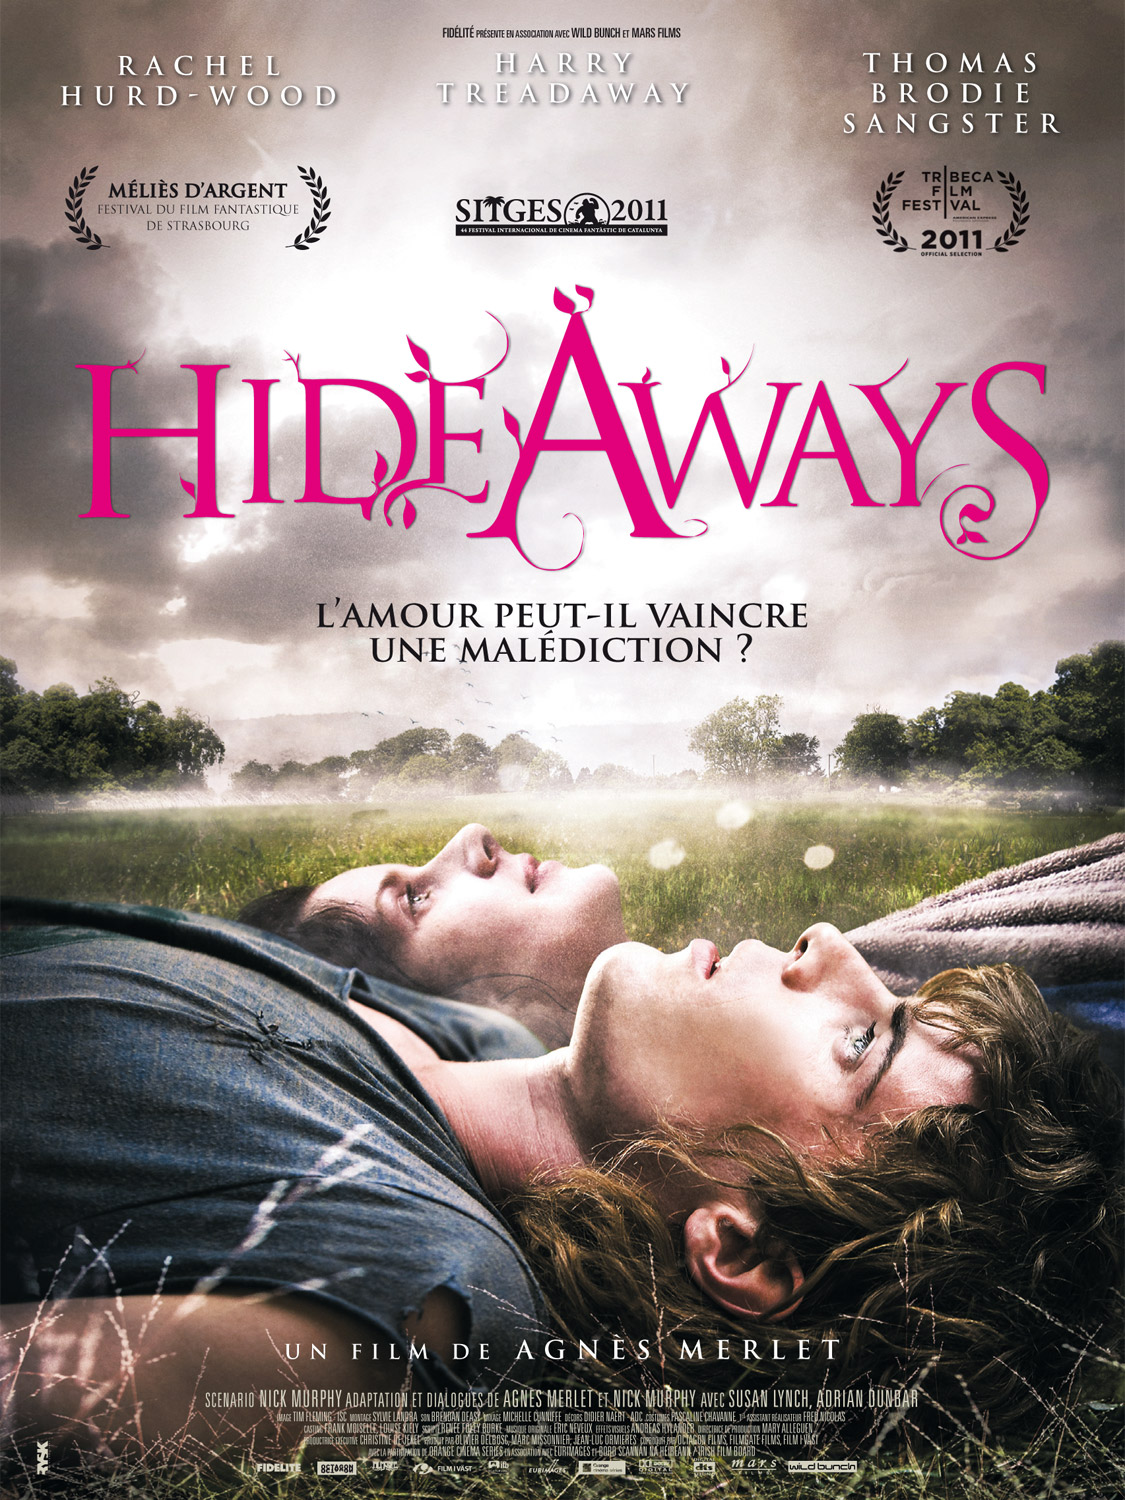 Hideaways 2011 filme cenas de nudez